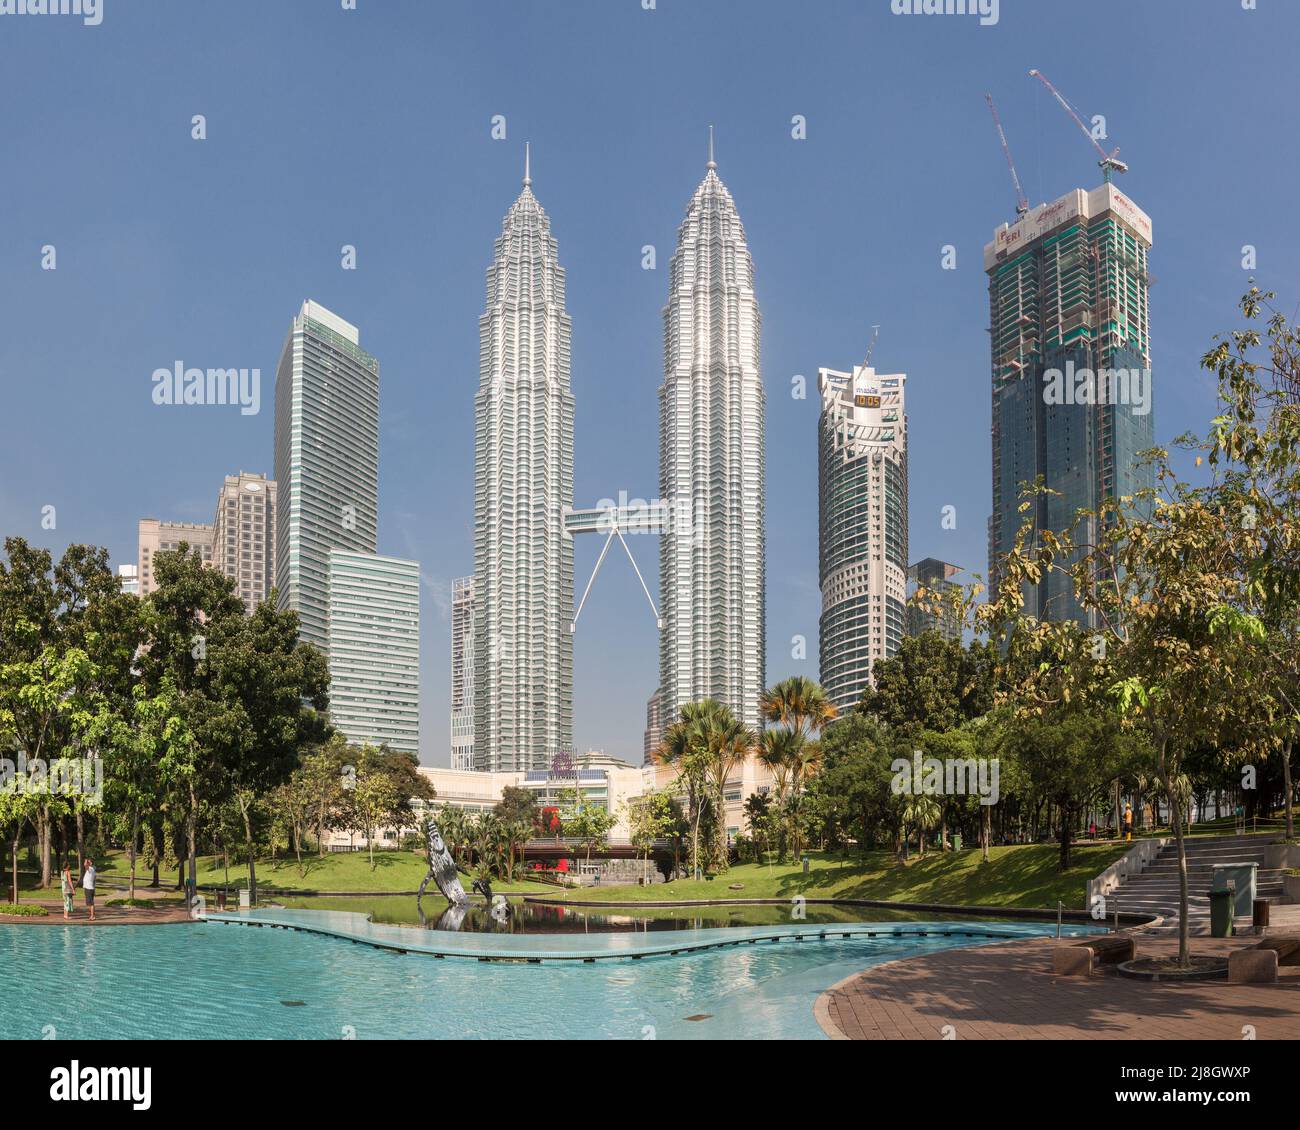 Petronas Twin Towers in Kuala Lumpur, Malaysia Stock Photo